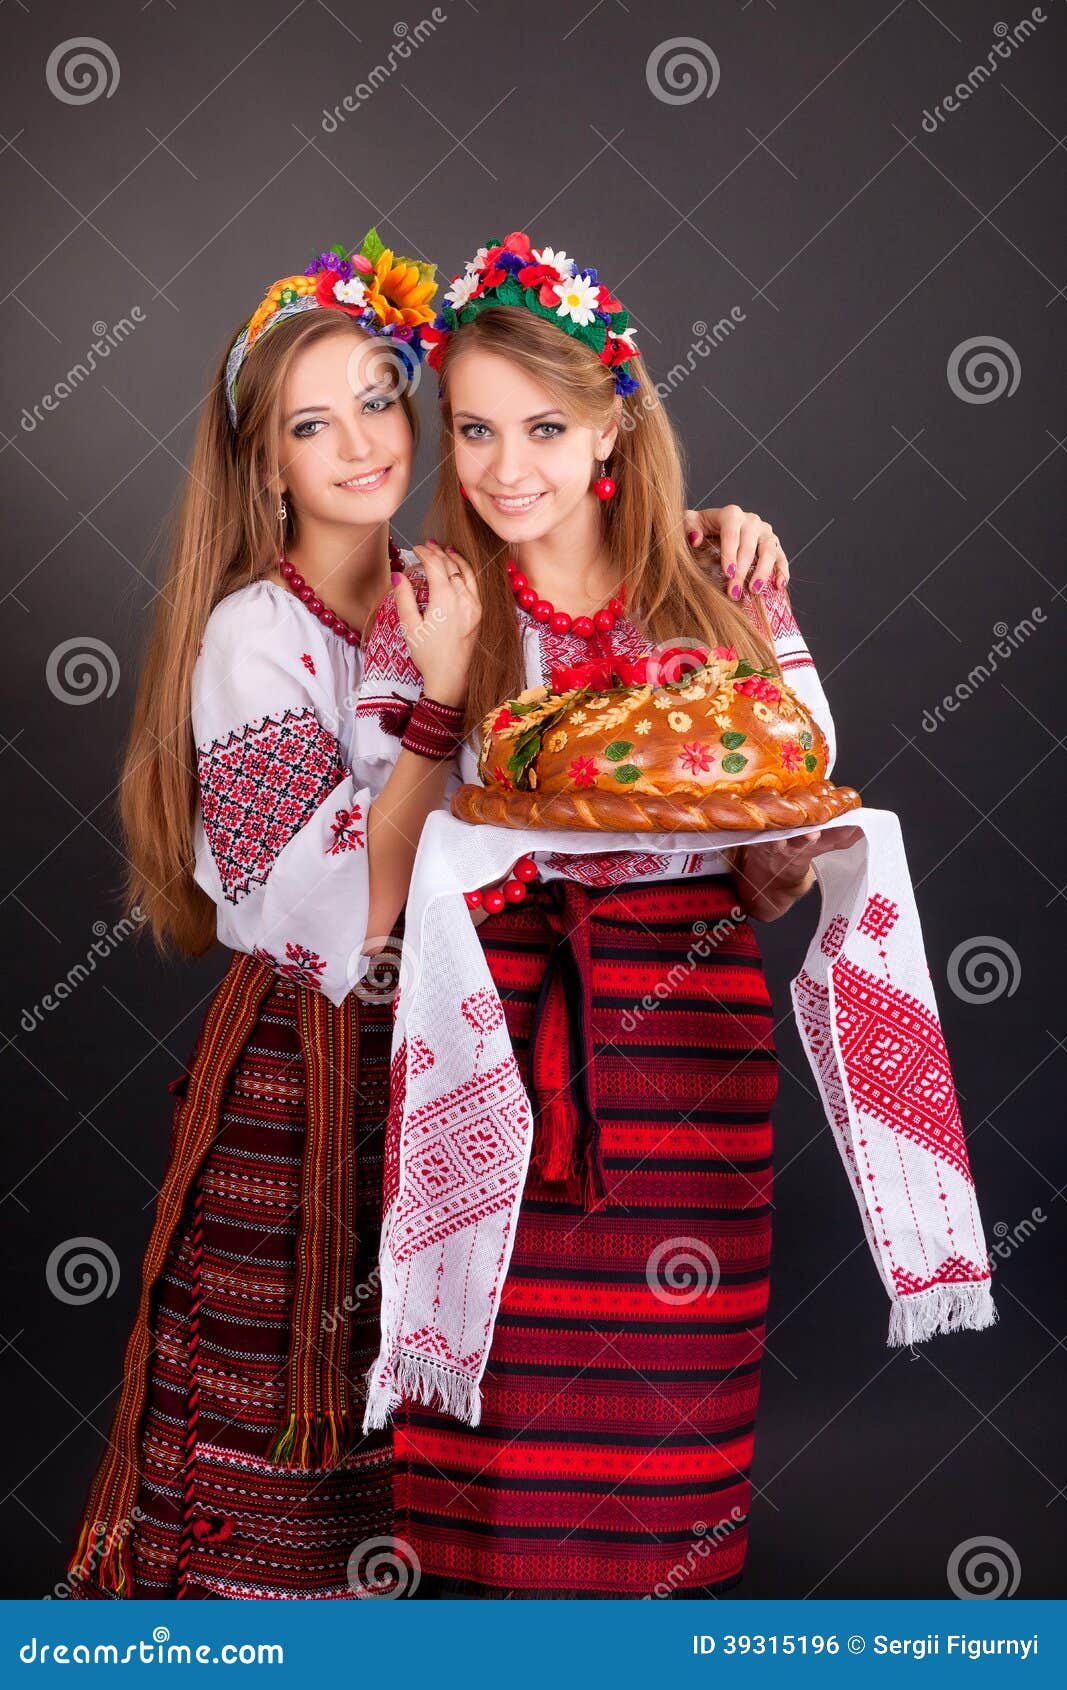 Junge Frauen In Der Ukrainischen Kleidung Mit Girlande Und Rundem Laib Stockfoto Bild Von Girlande Kleidung